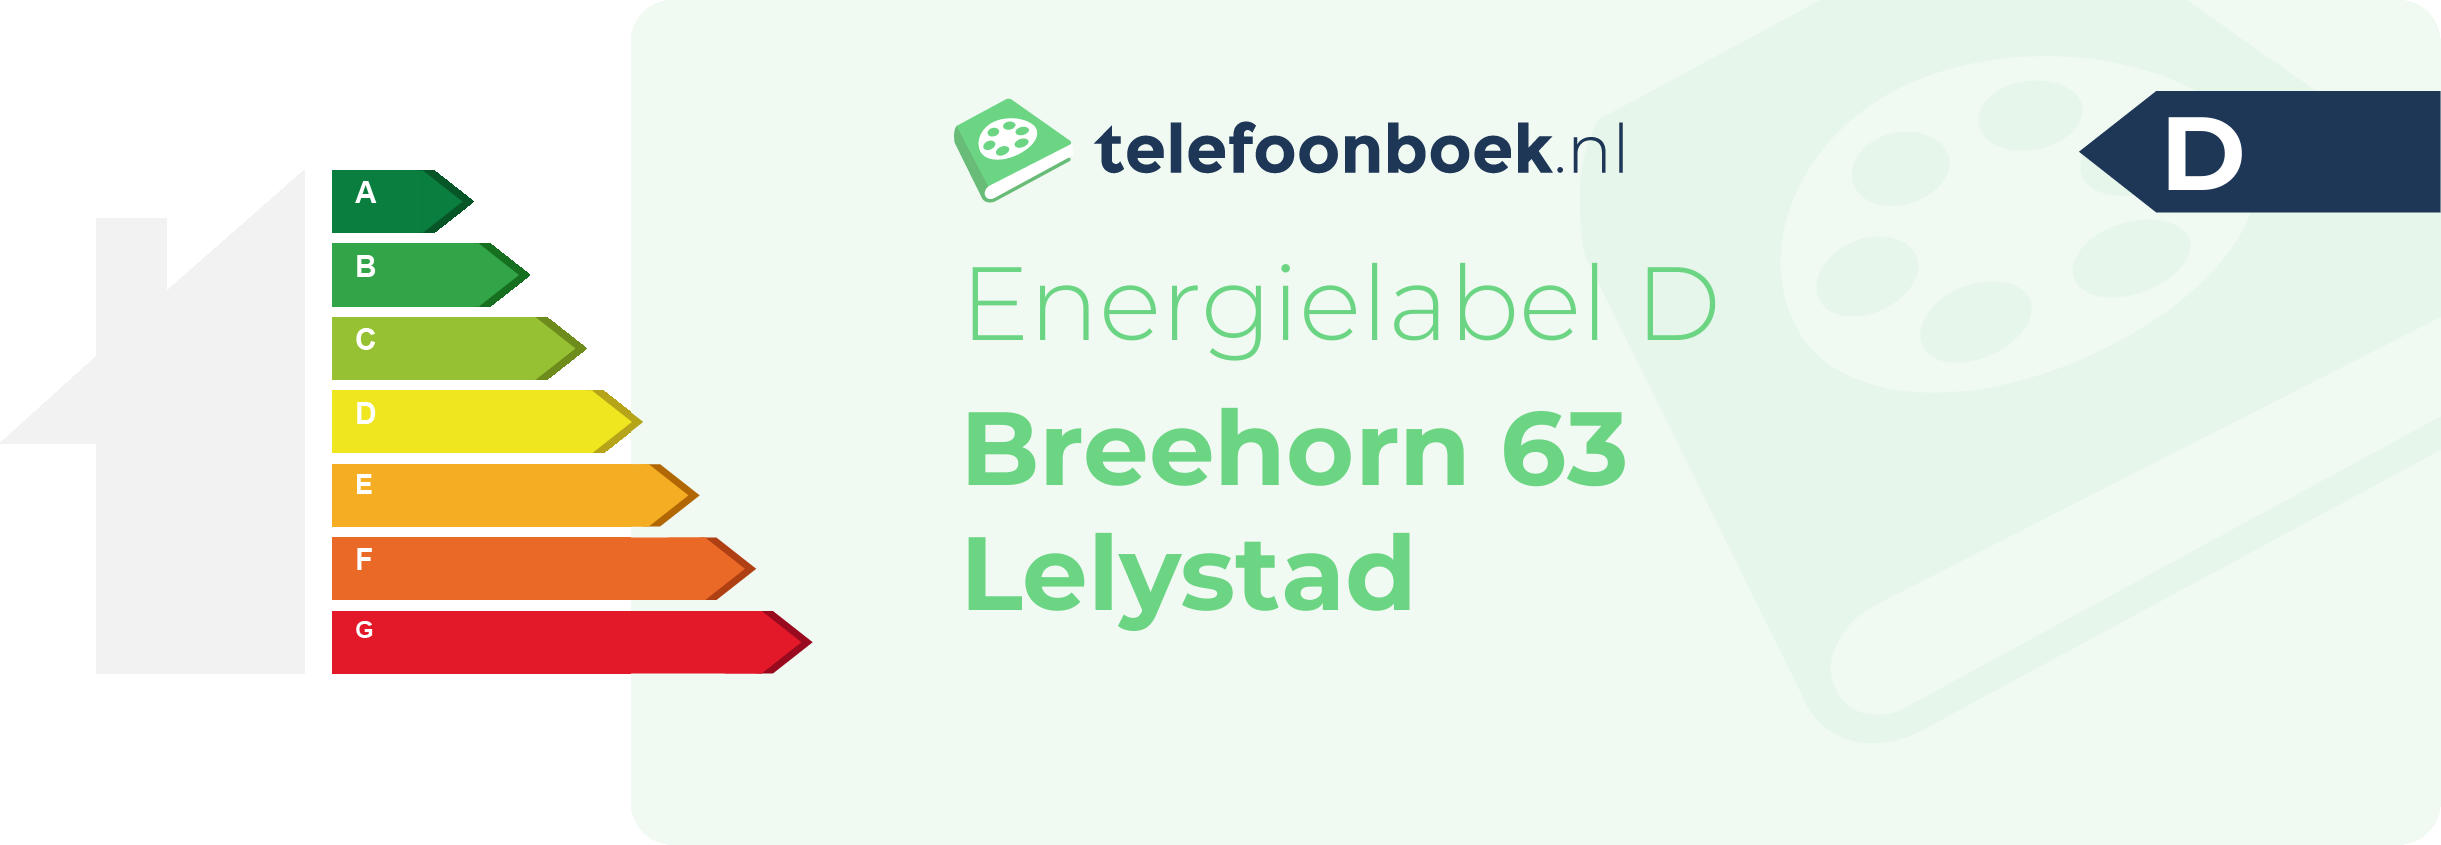 Energielabel Breehorn 63 Lelystad